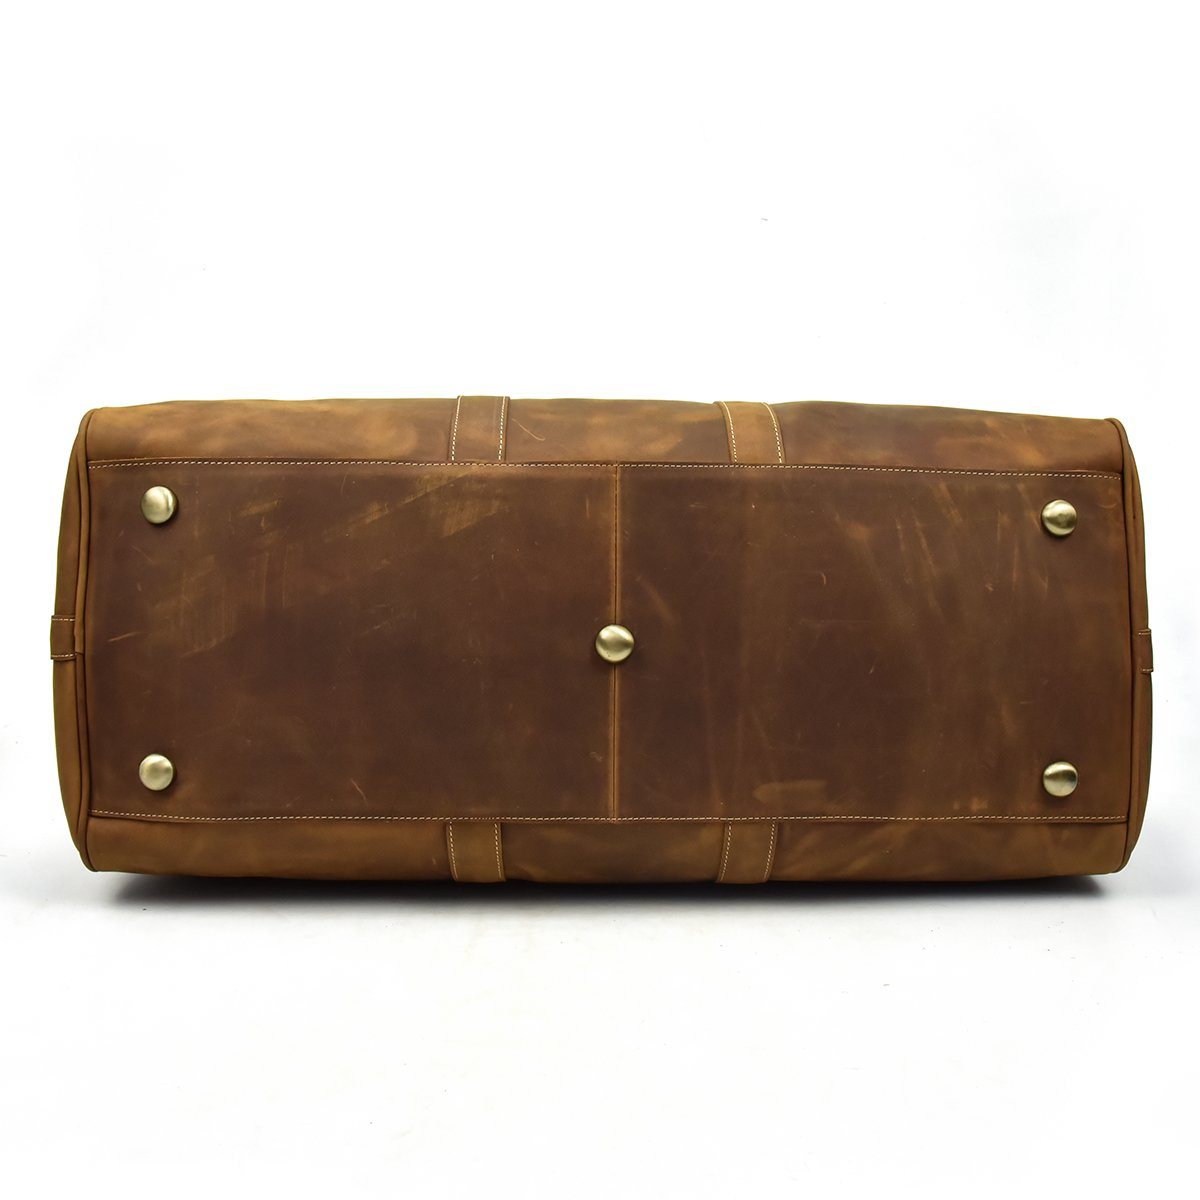 brown leather holdall weekend bag